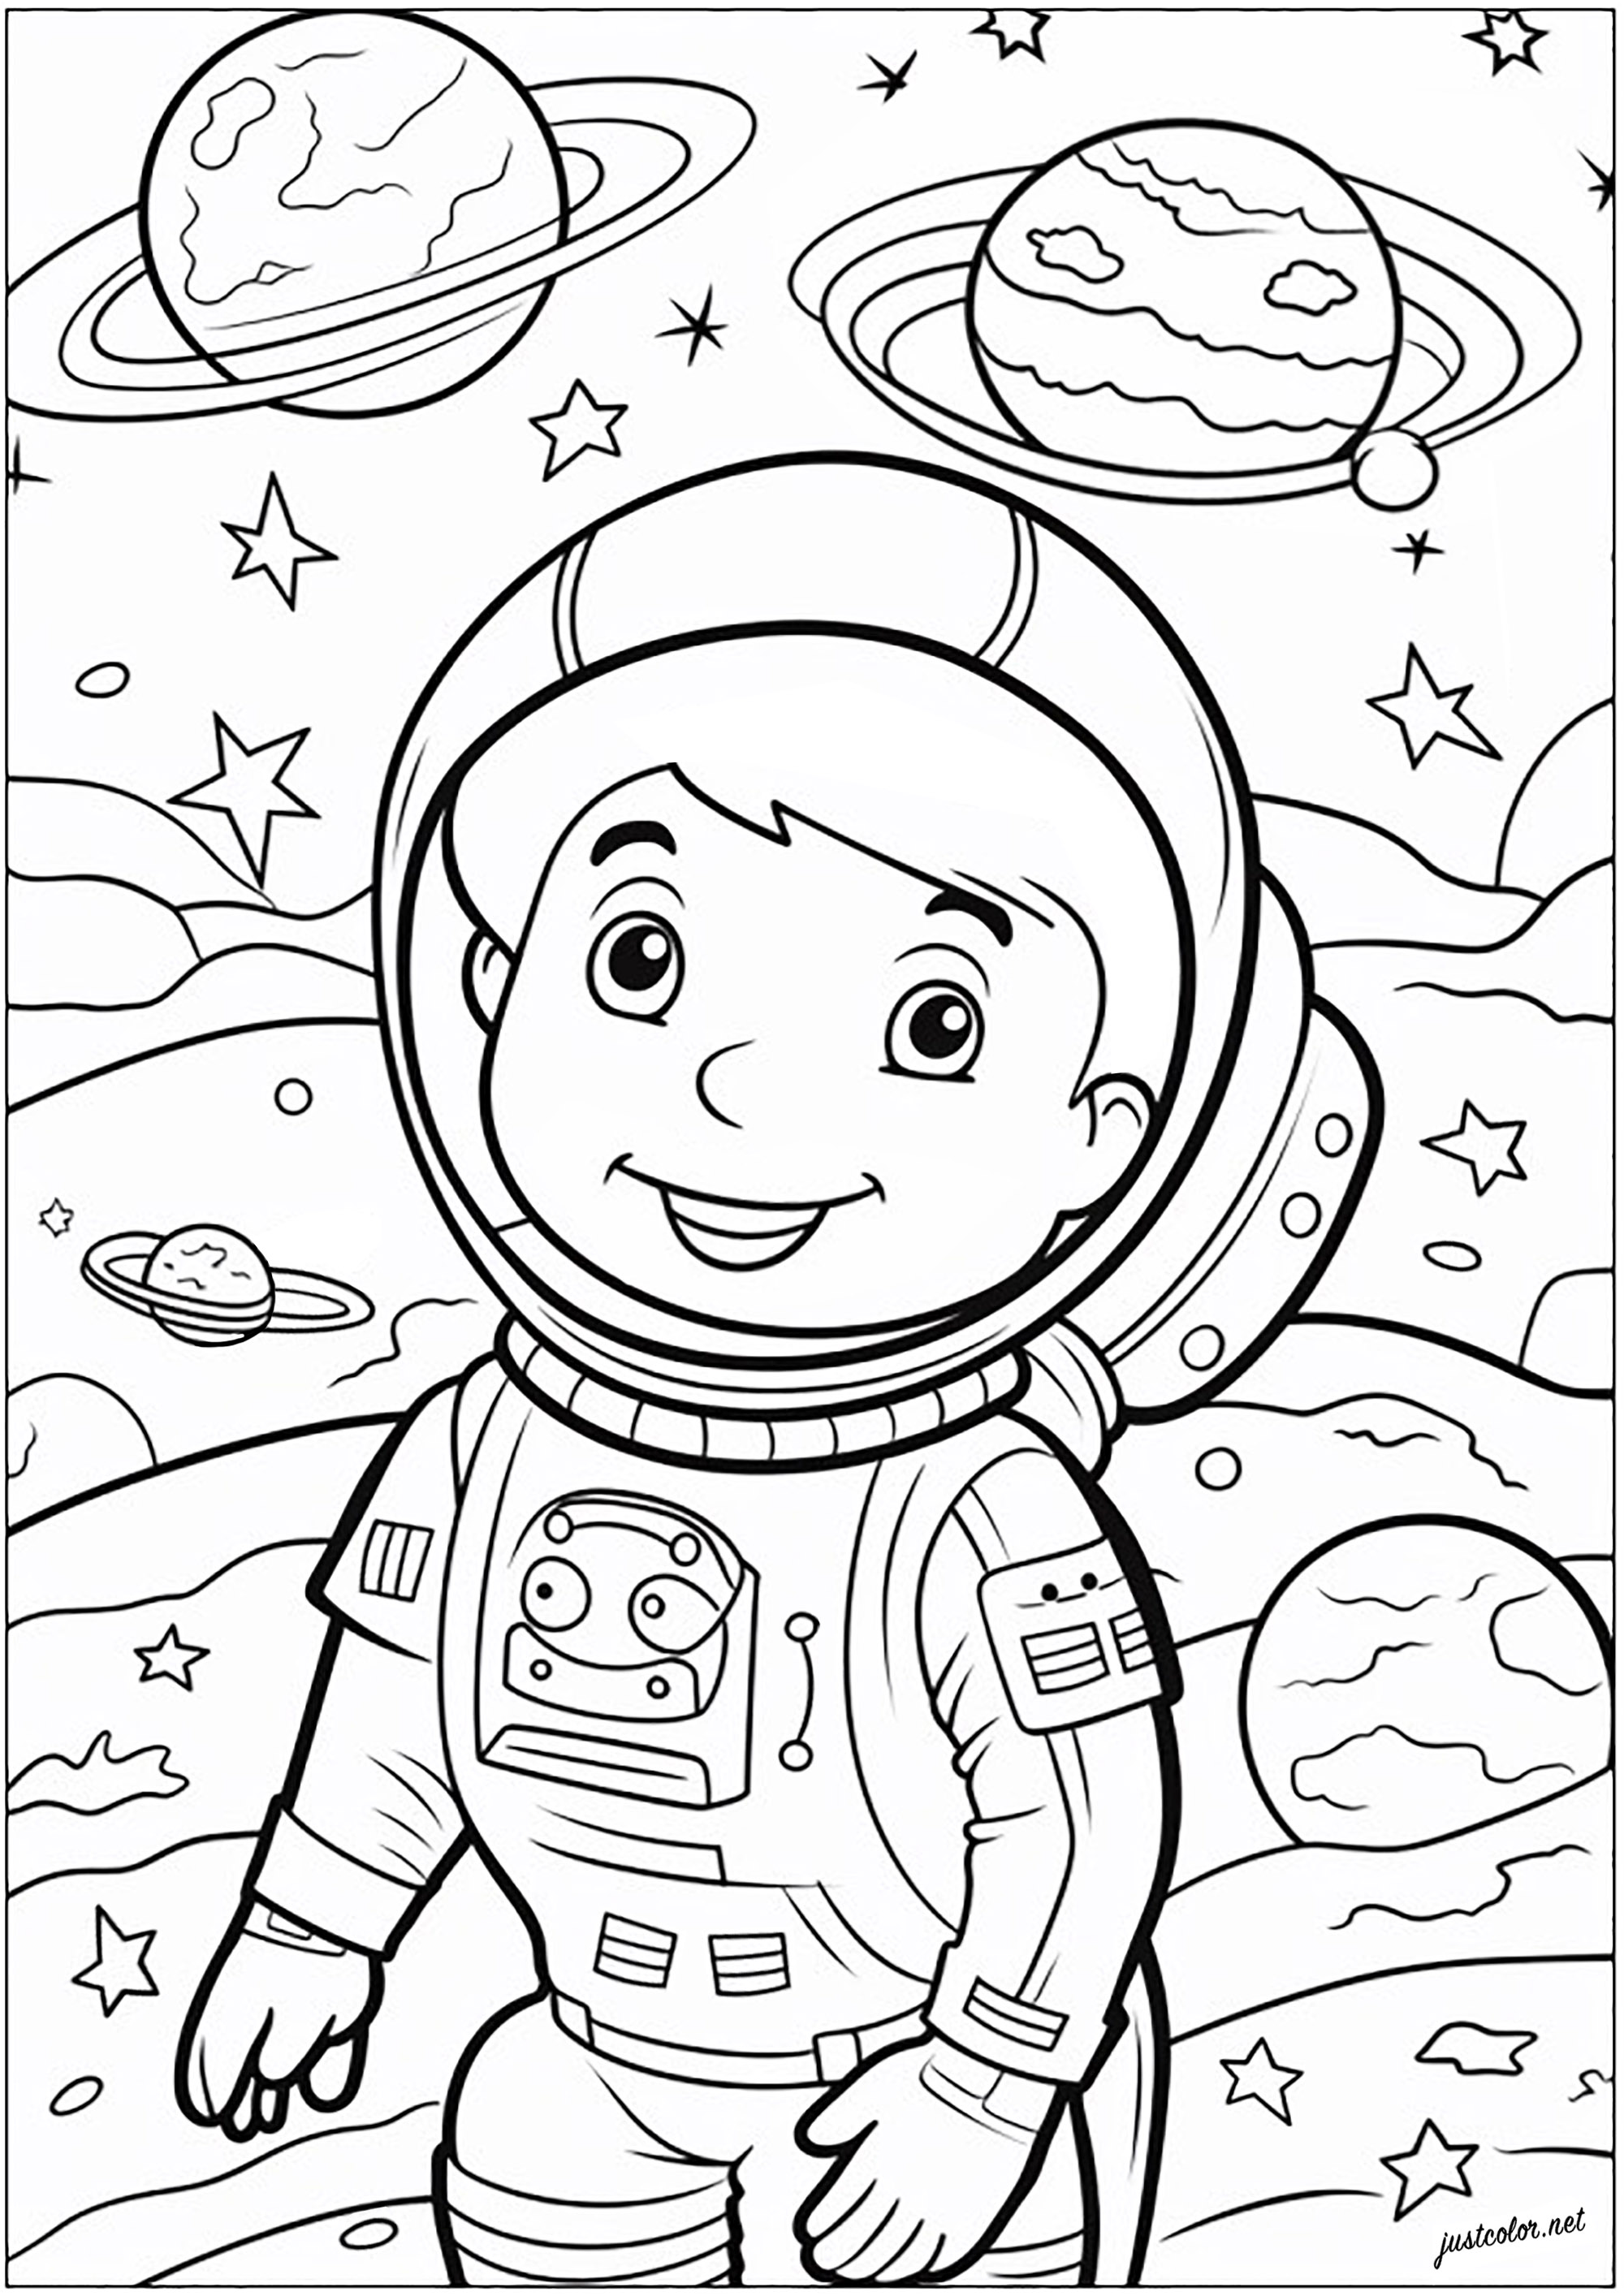 Colorare un piccolo astronauta. Giovane astronauta raffigurato nello spazio, fluttuante tra stelle e pianeti